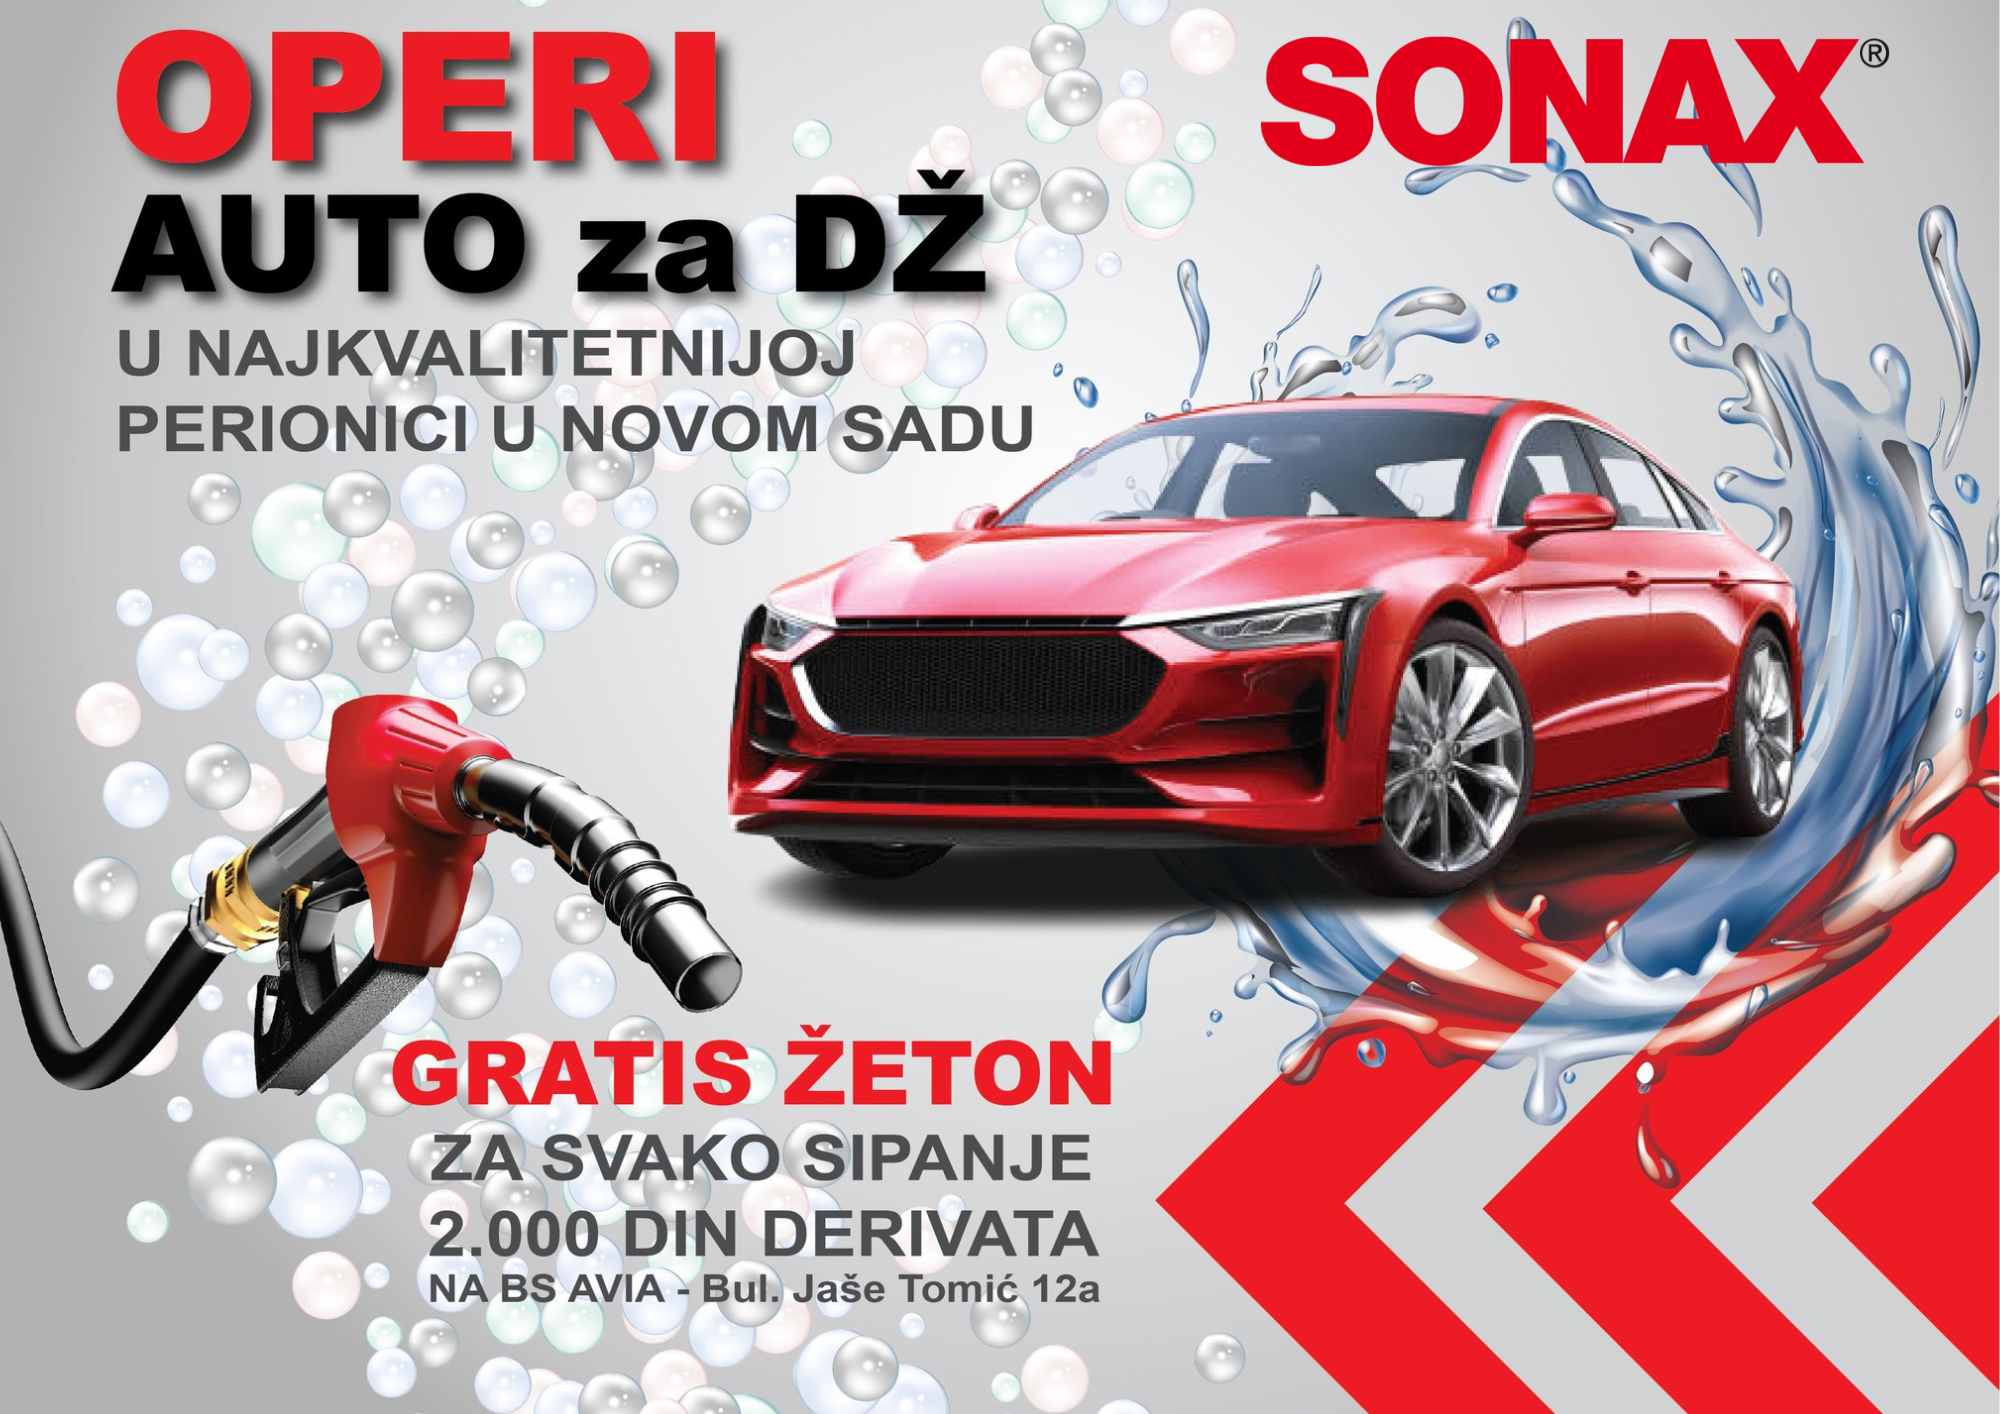 Operi auto za DŽ u najkvalitetnijoj perionici u Novom Sadu - SONAX